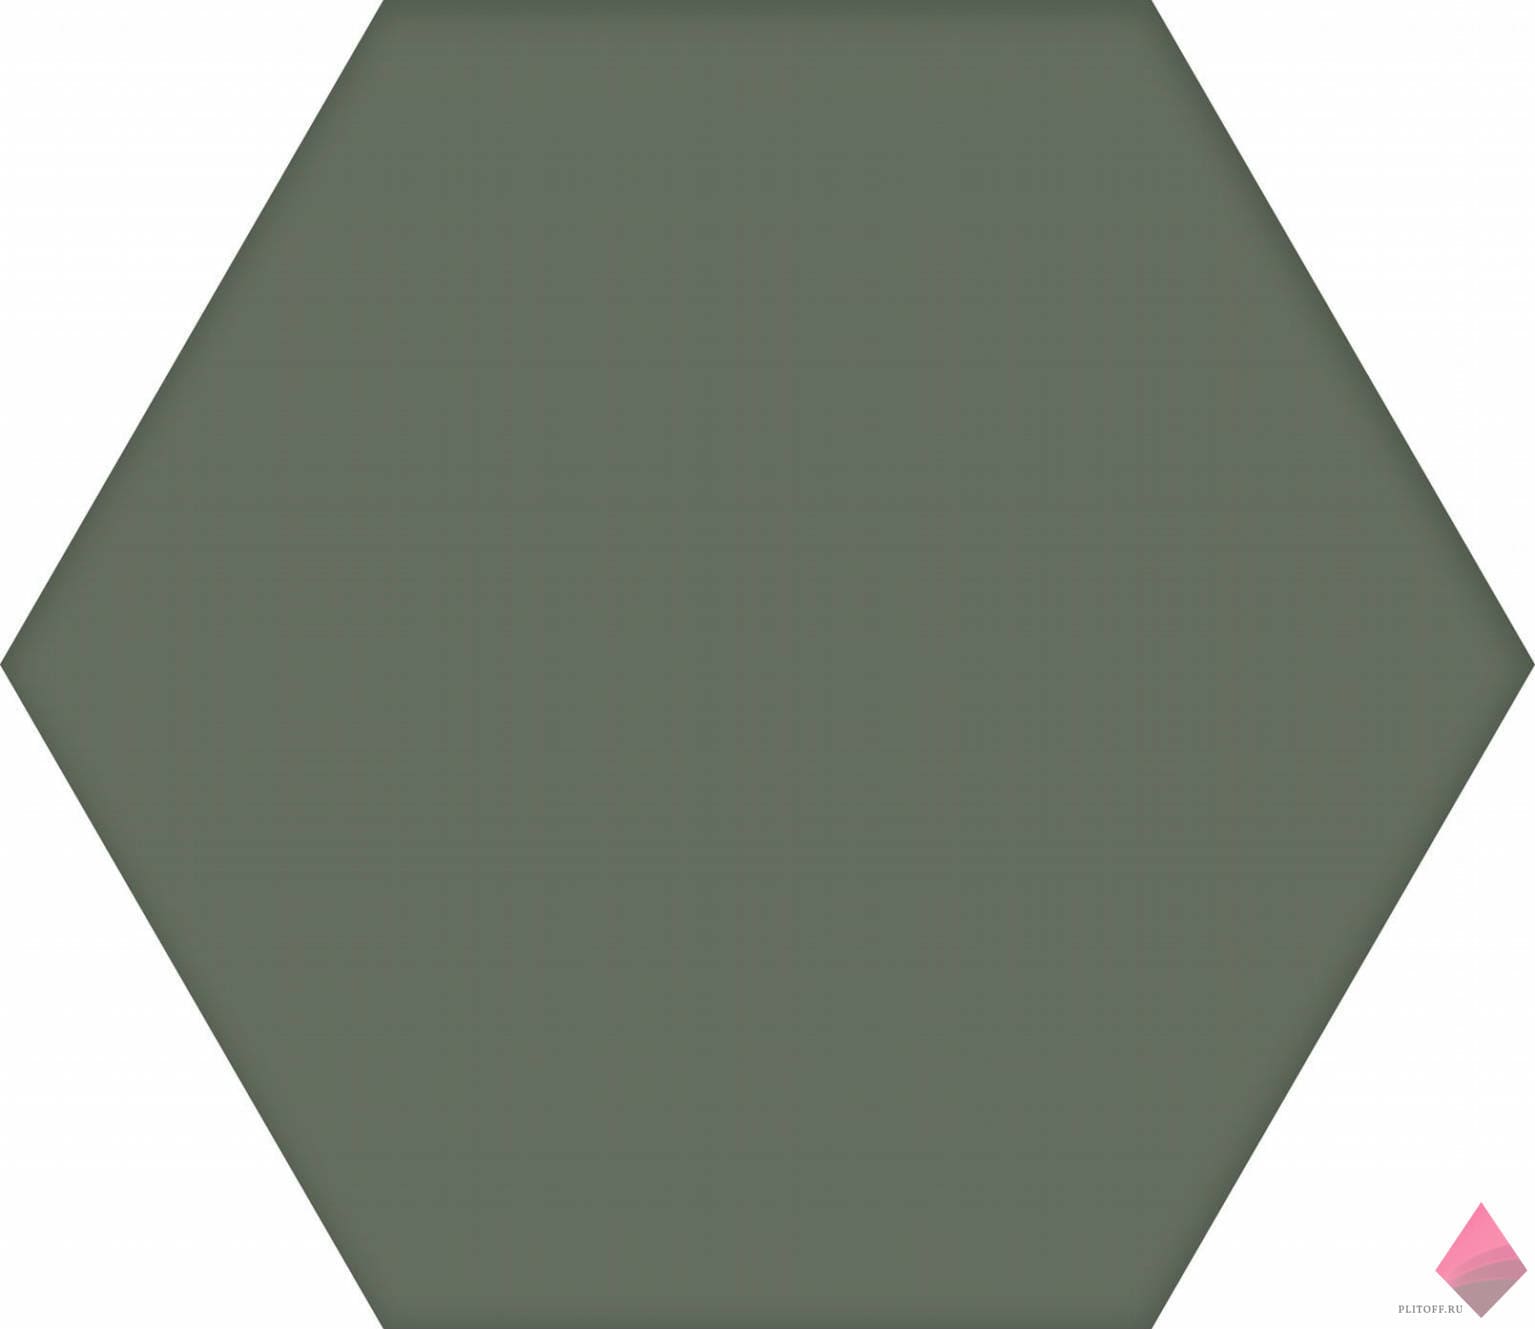 Зеленая плитка соты Codicer Basic Moss Hex 22x25